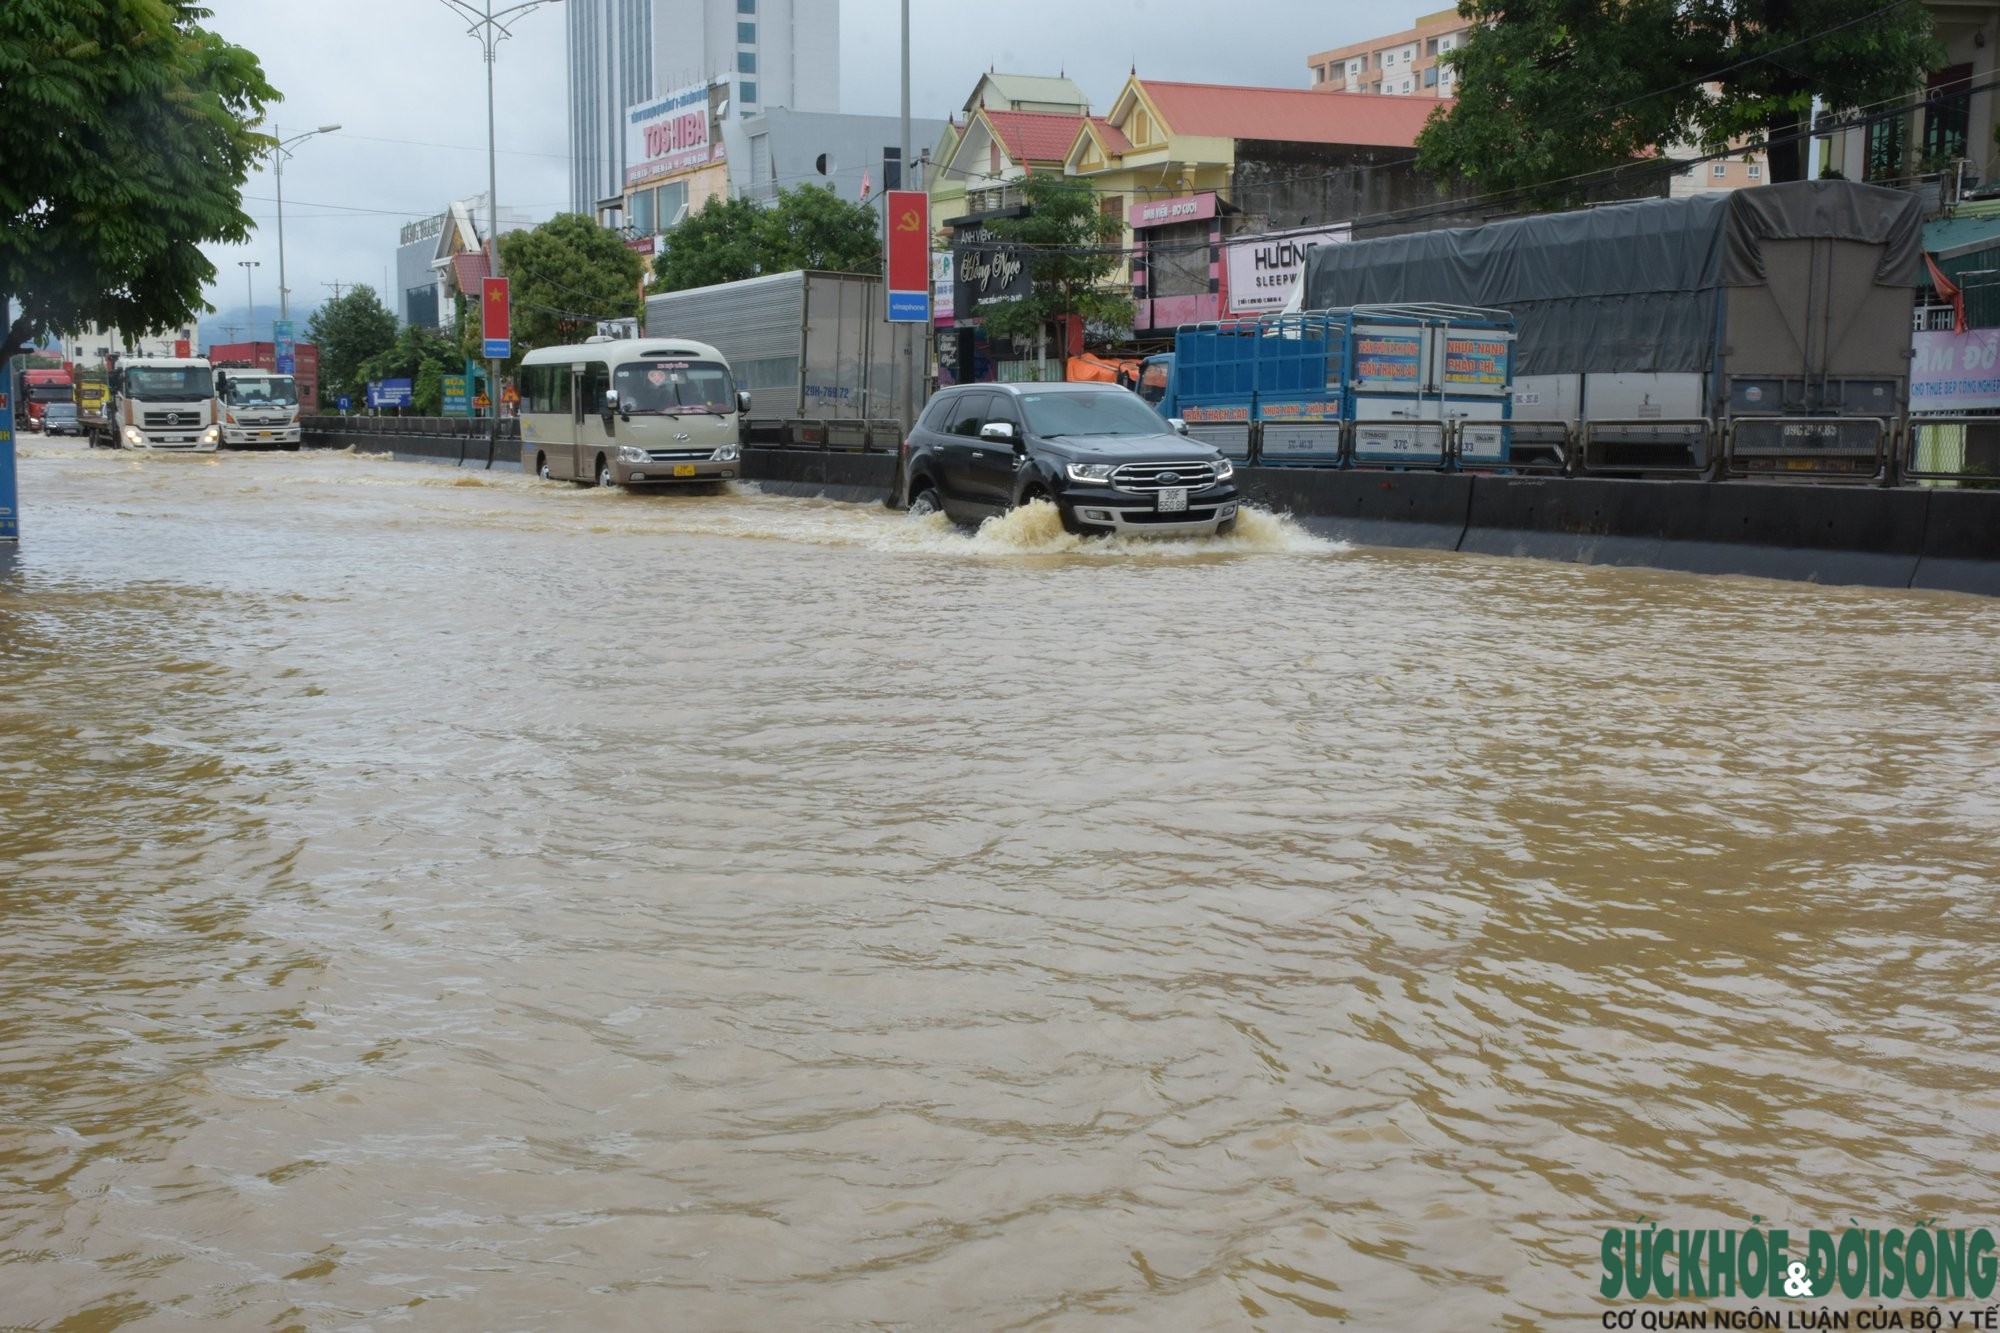  Nhiều đoạn của Quốc lộ 1A đoạn qua thị xã Hoàng Mai đã ngập sâu trong nước. Ảnh: Trần Thanh Yên